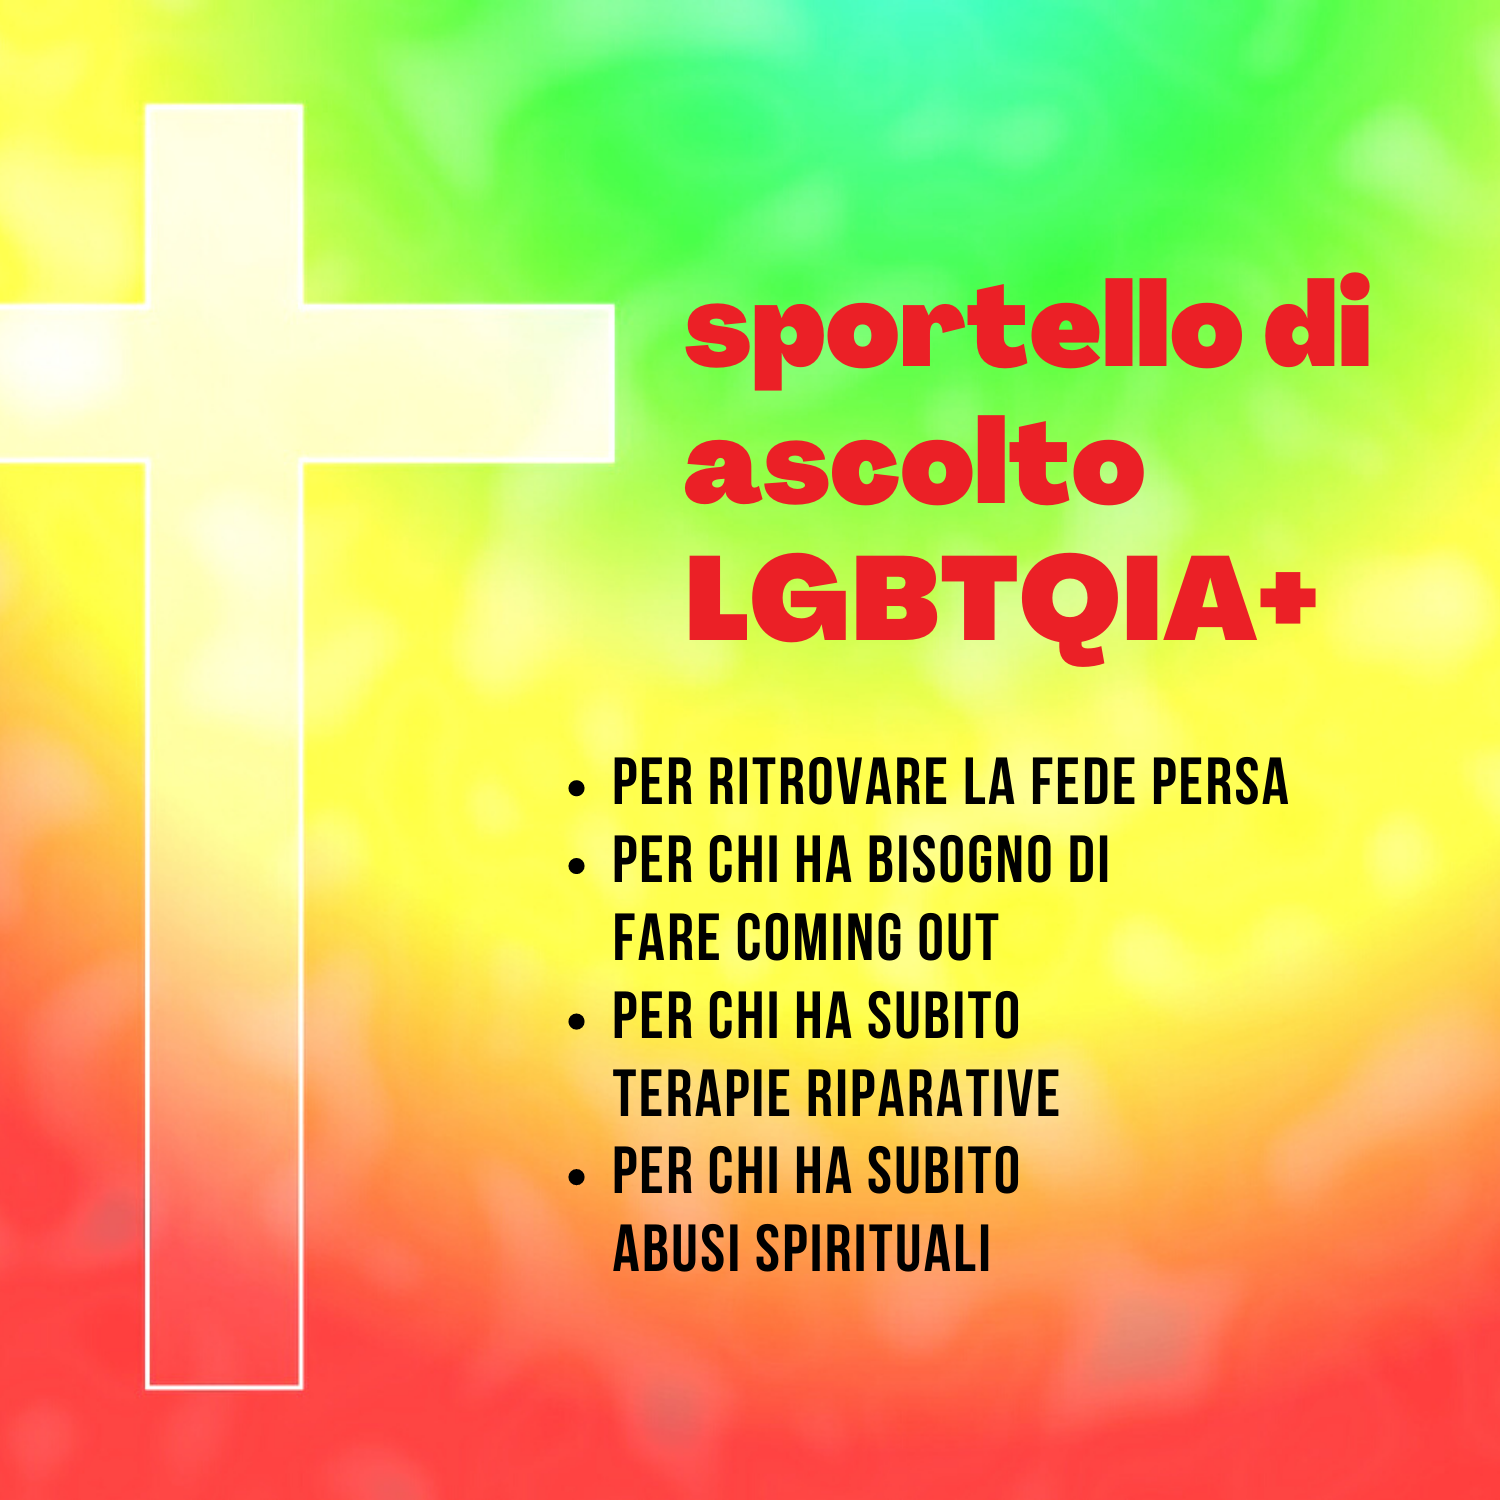 sportello ascolto LGBTQIA+ chiesa vetero cattolica